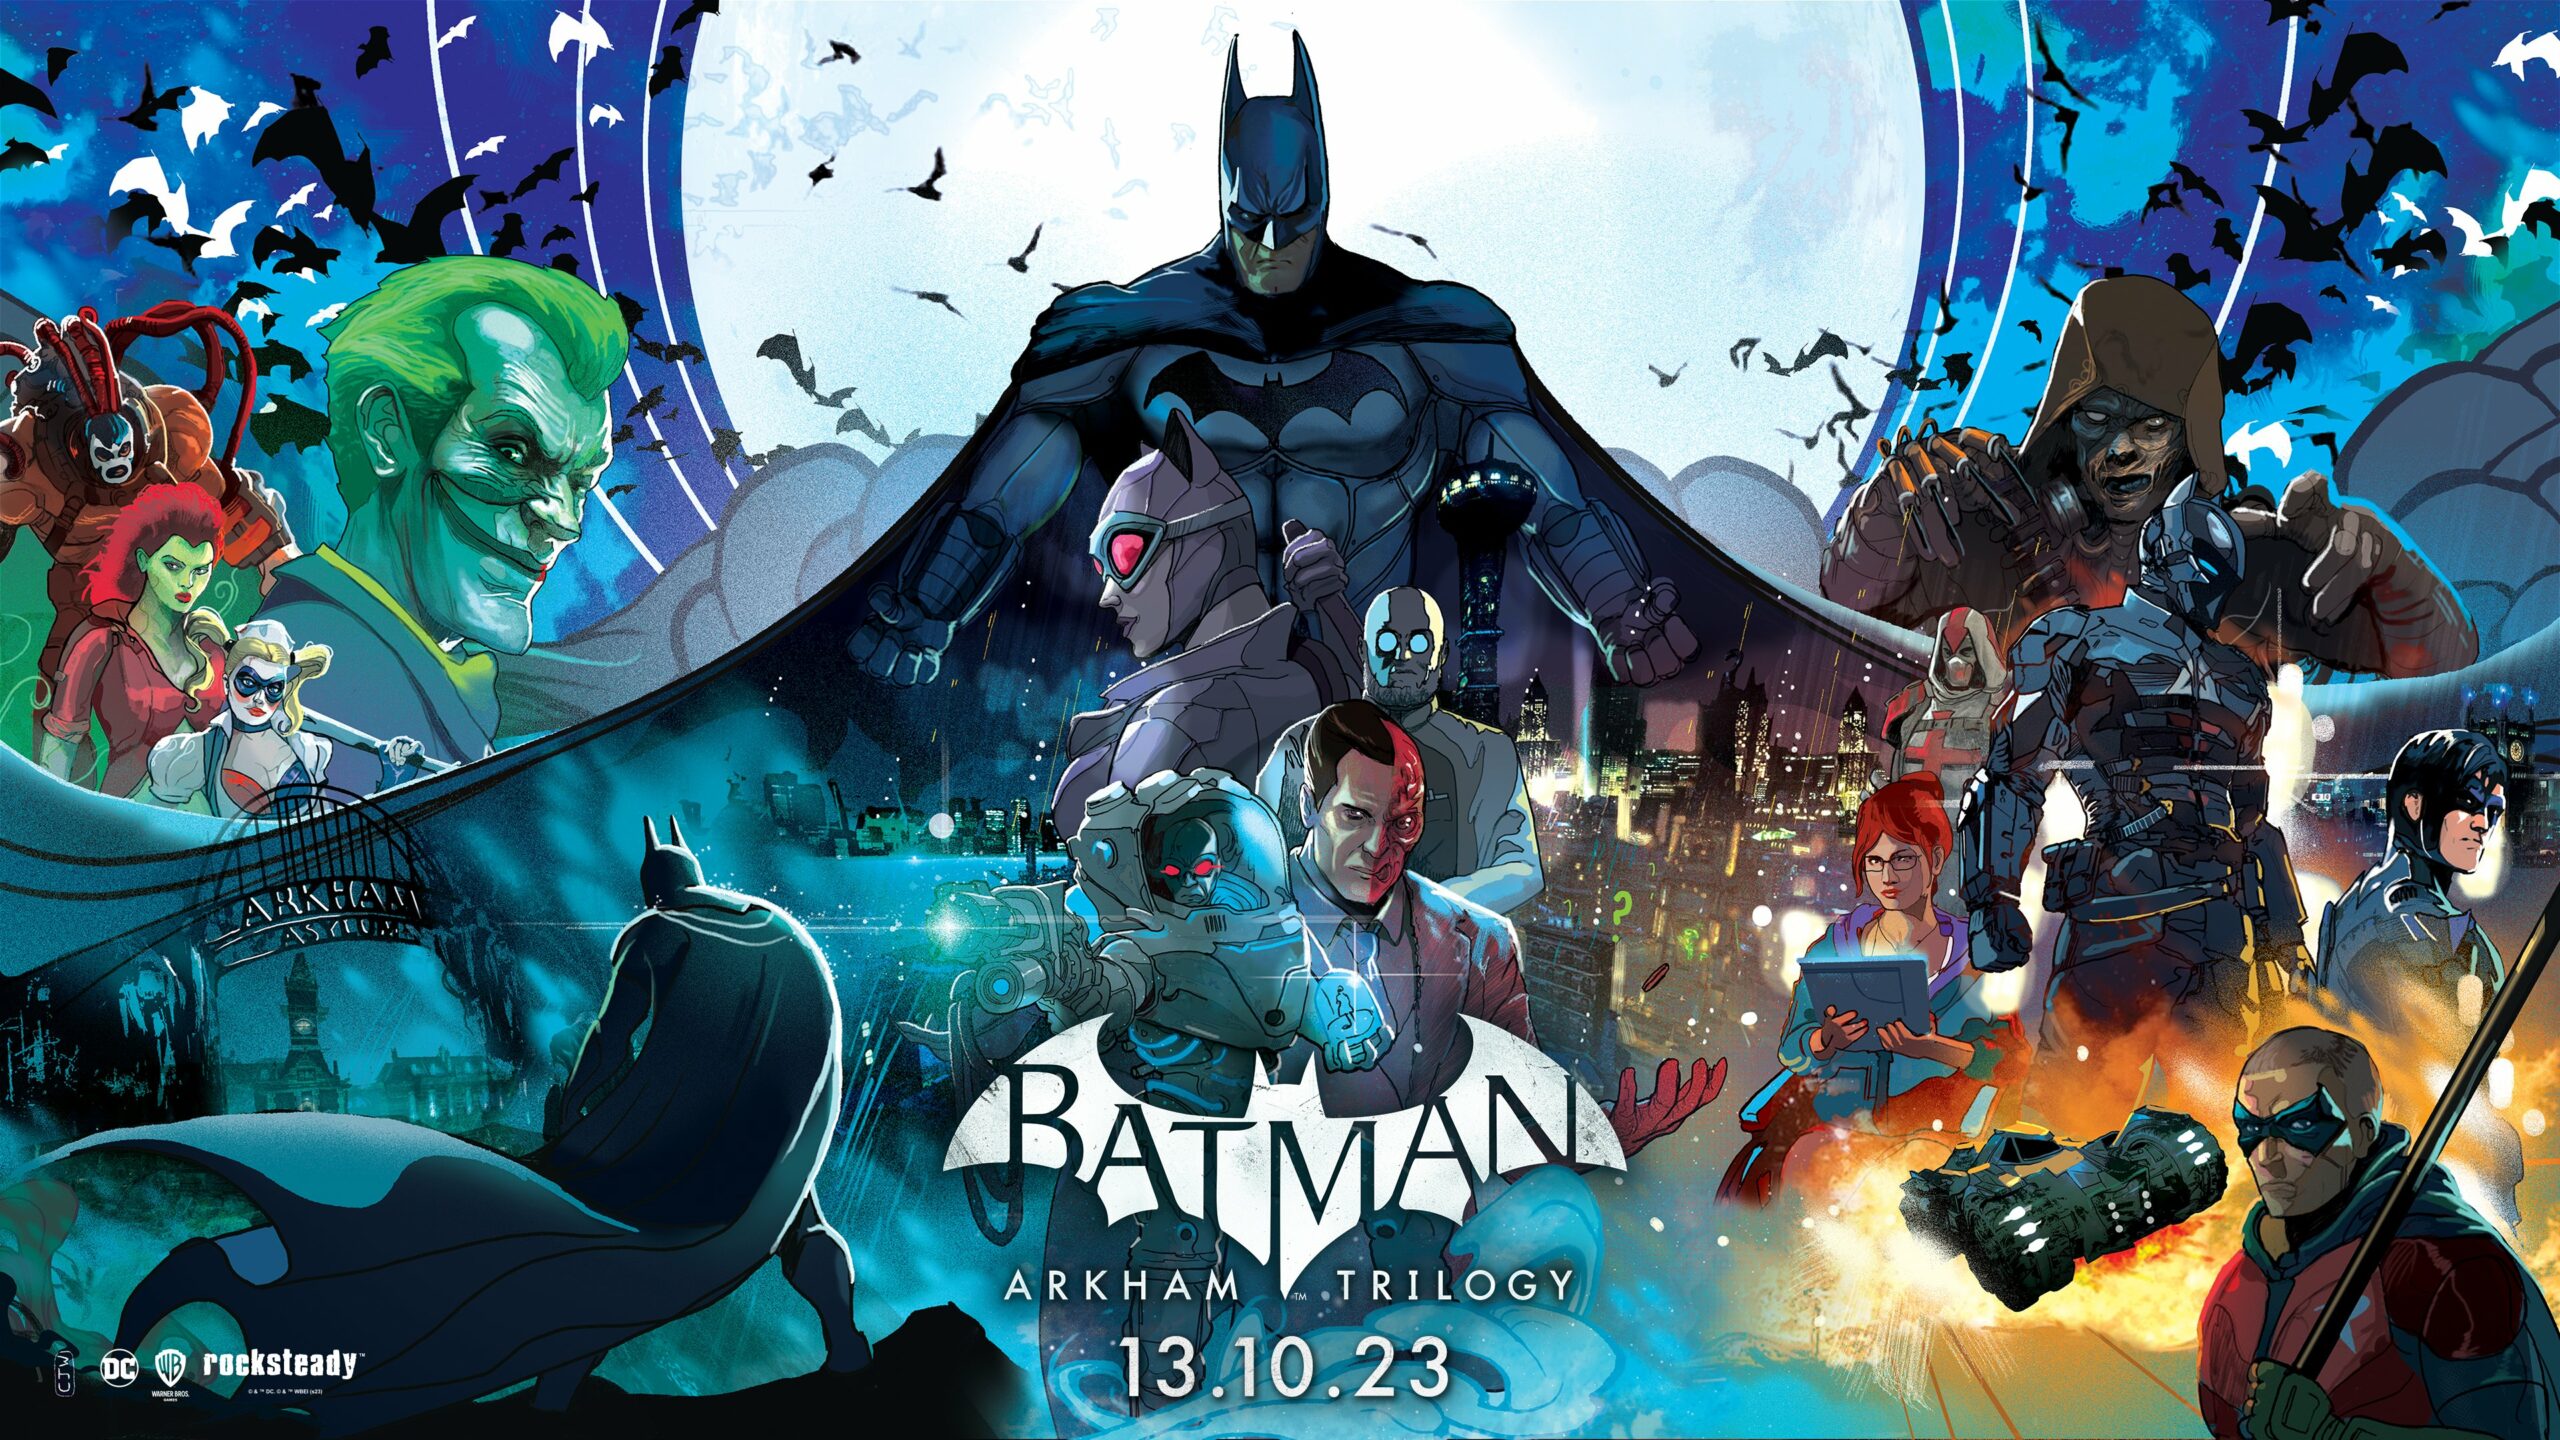 Batman: Arkham Trilogy arrive sur Nintendo Switch le 13 octobre